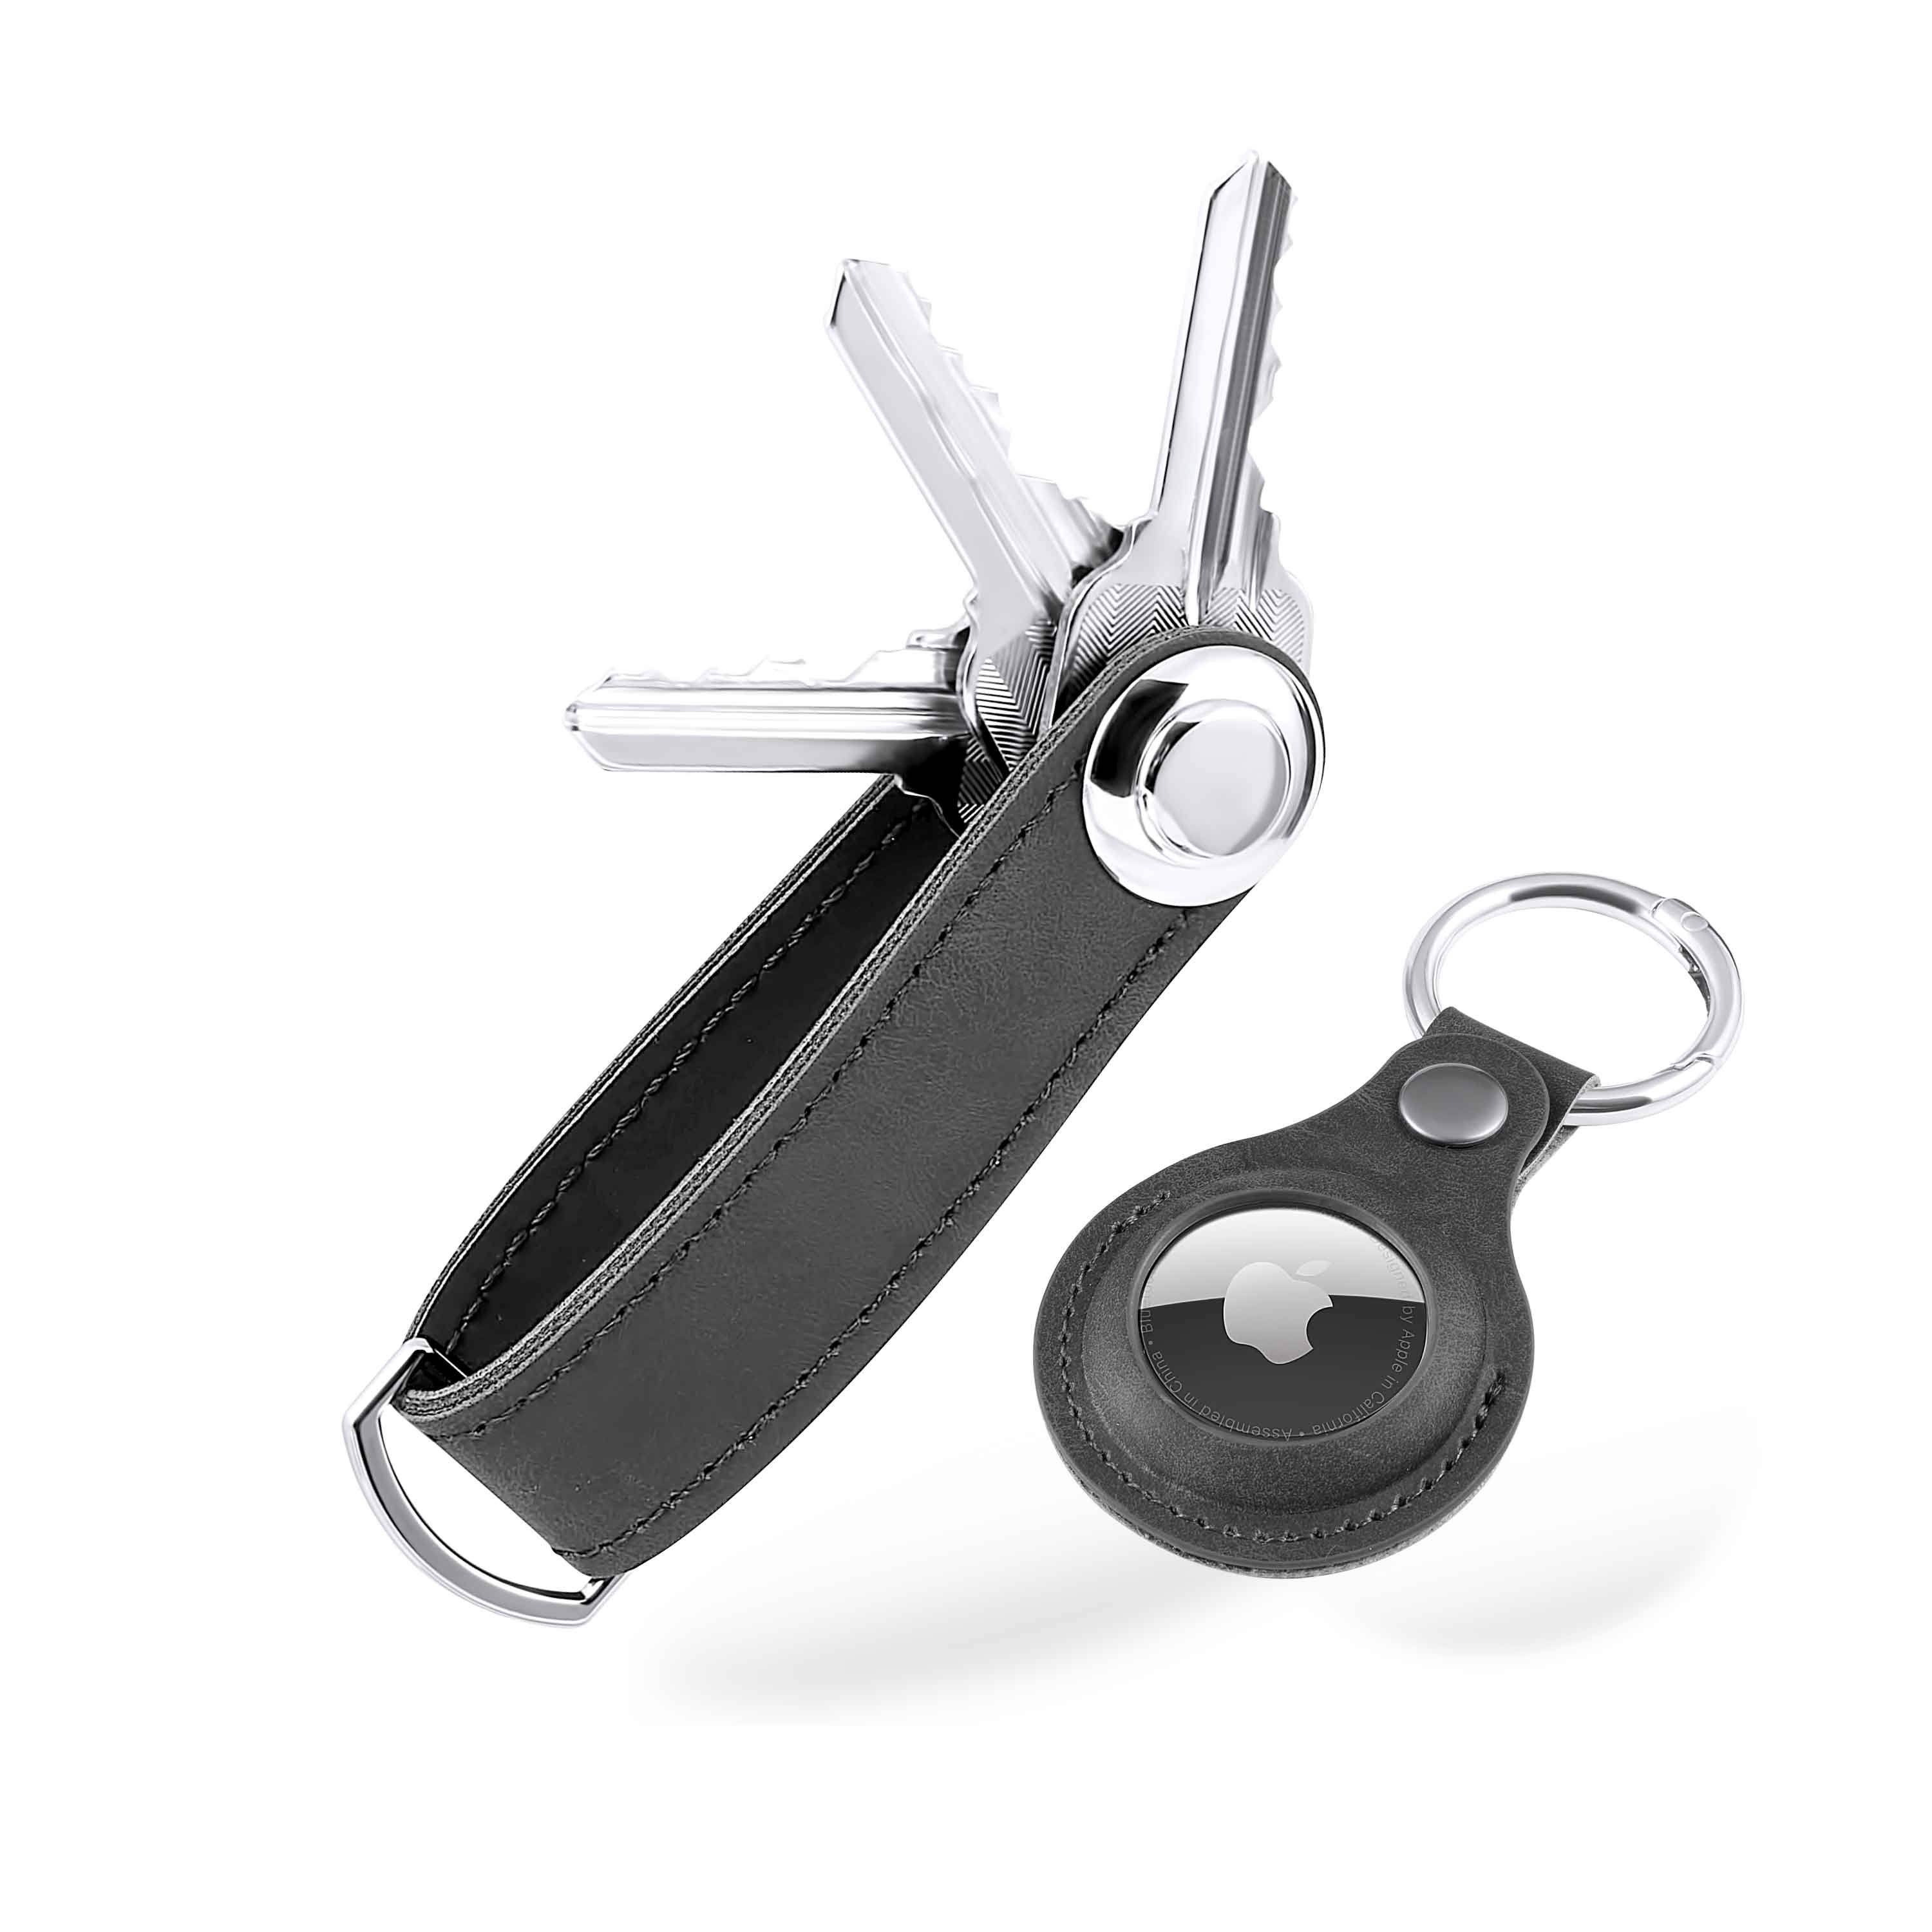 Smart Key: Mehr als nur ein einfacher Schlüsselanhänger